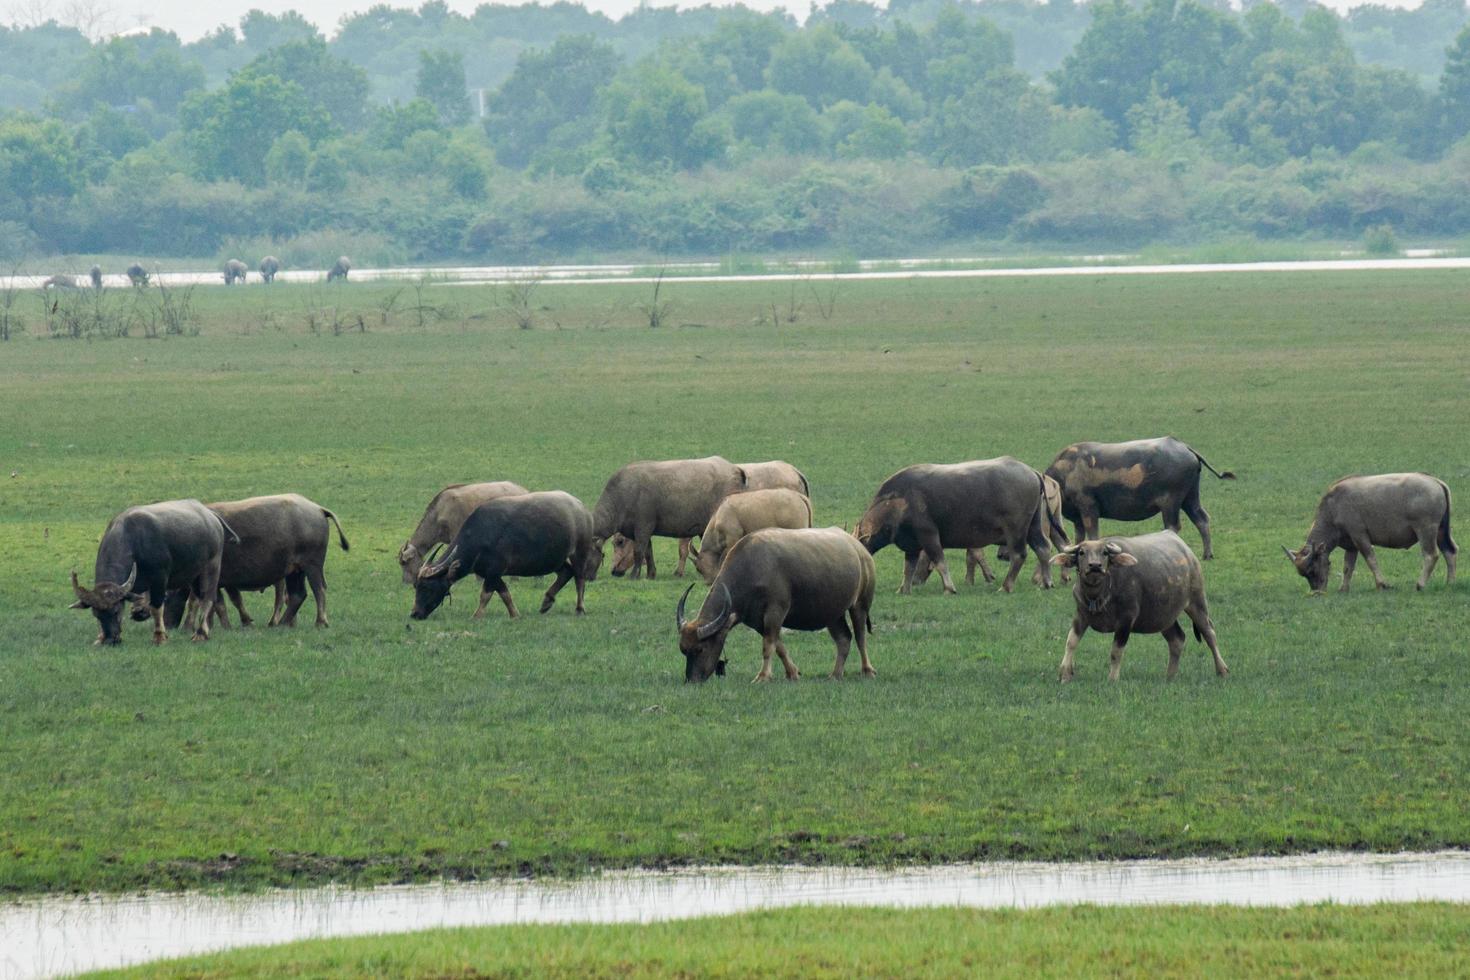 Buffaloes eating grass on grass field riverside photo